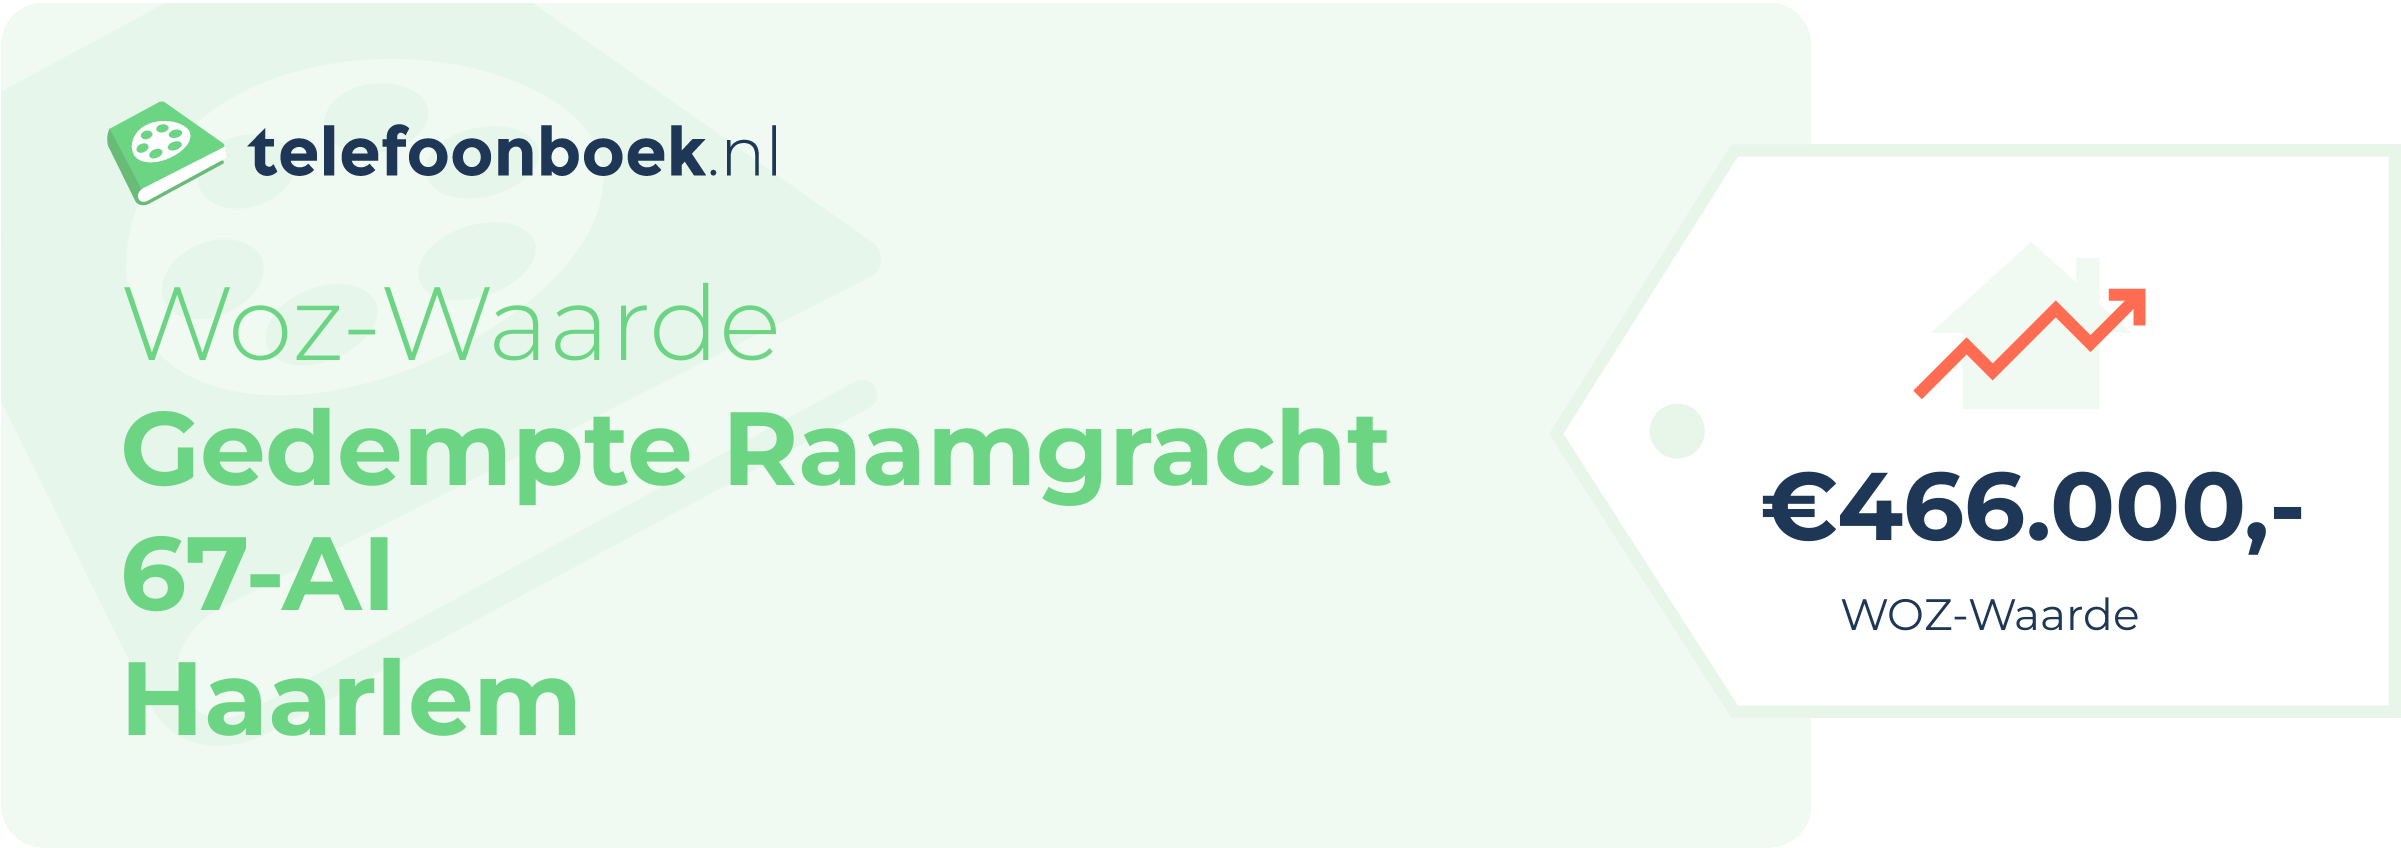 WOZ-waarde Gedempte Raamgracht 67-AI Haarlem